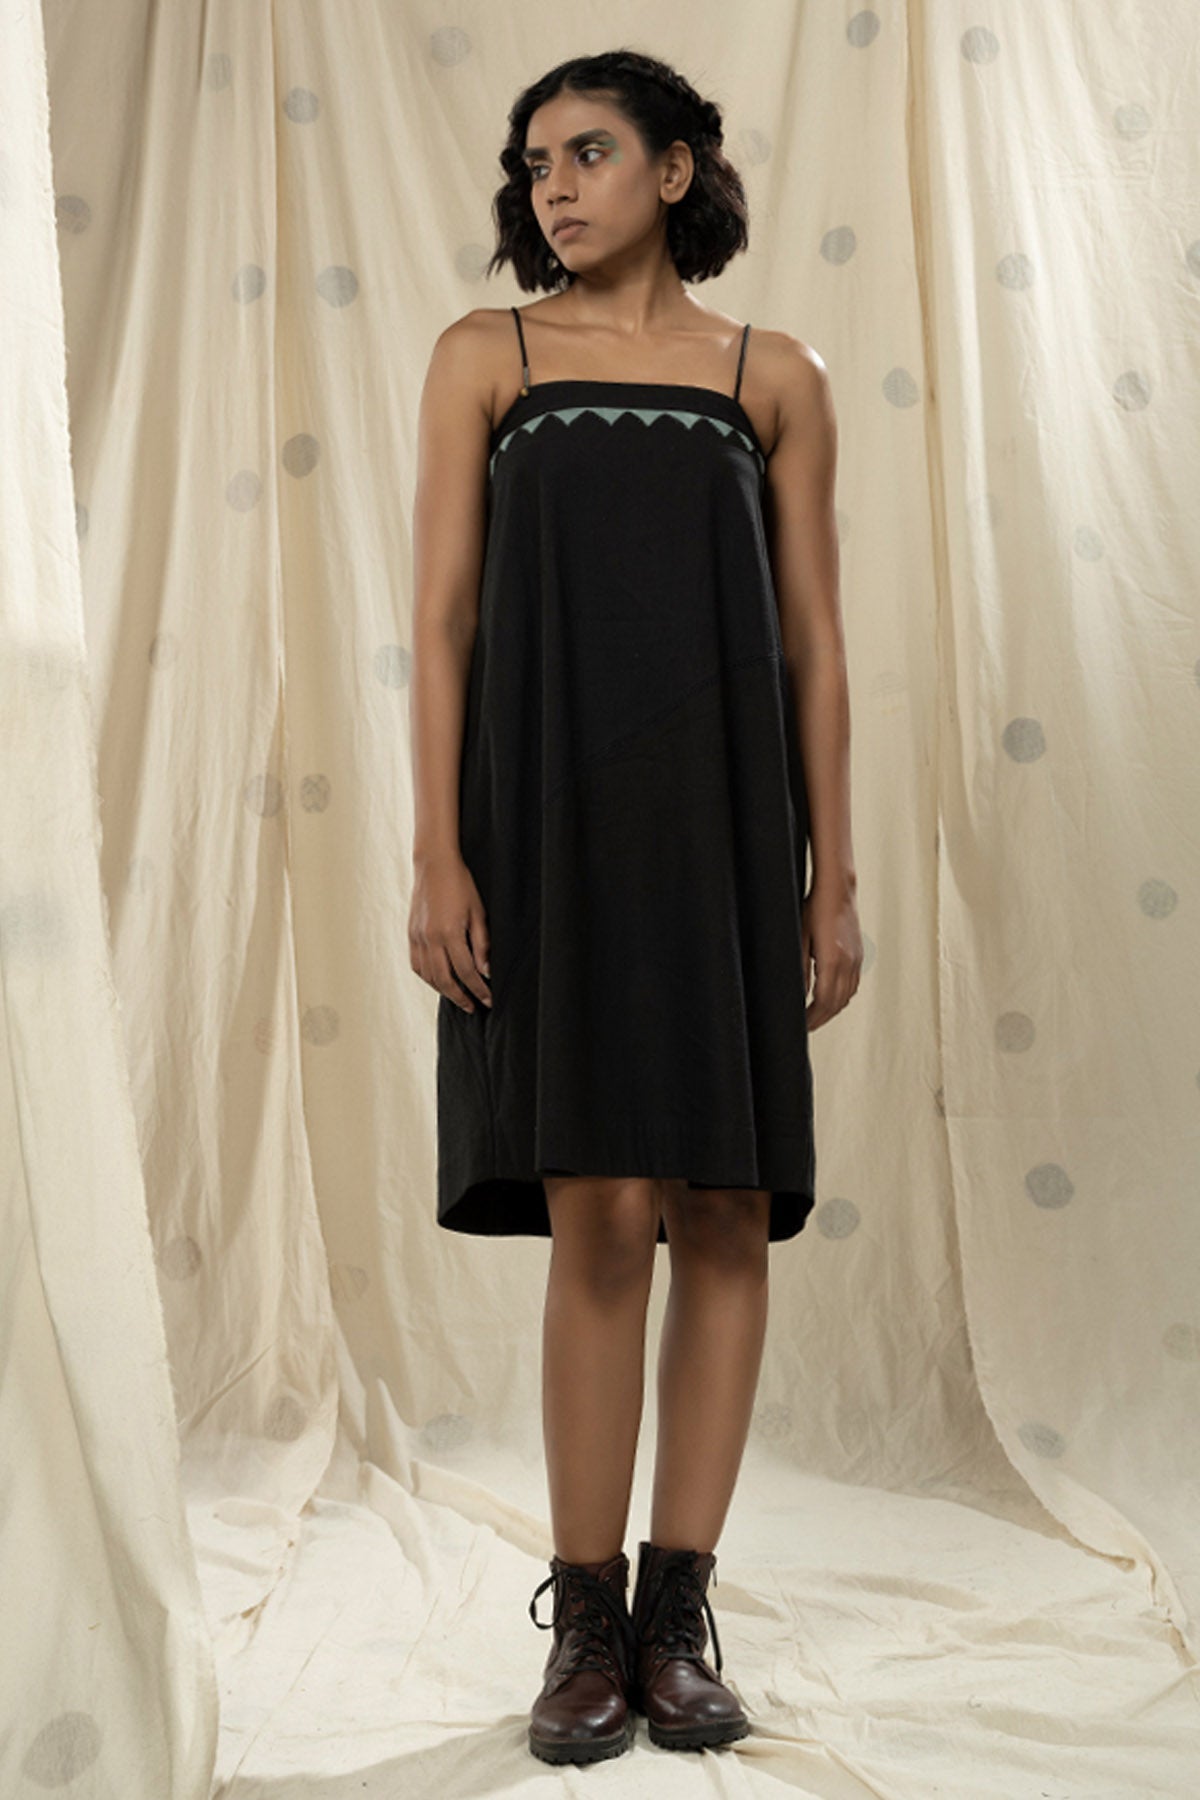 Buy Thread Game Black Khadi Sleeveless Dress For Women online at ScrollnShops